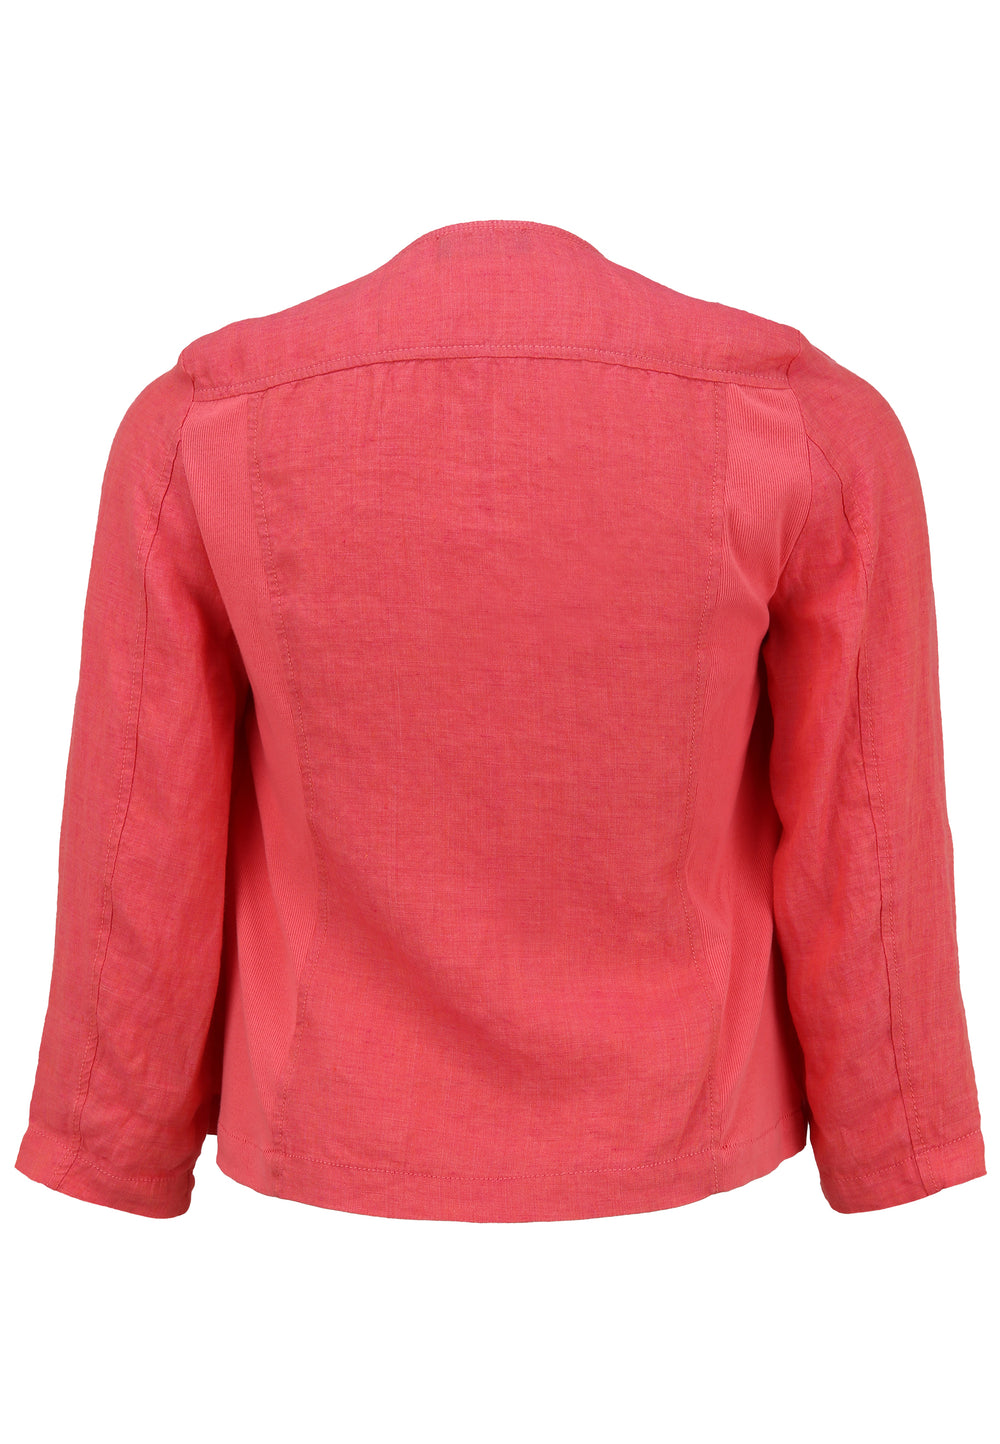 roze linnen vest - doris streich - 343135 - grote maten - dameskleding - kledingwinkel - herent - leuven